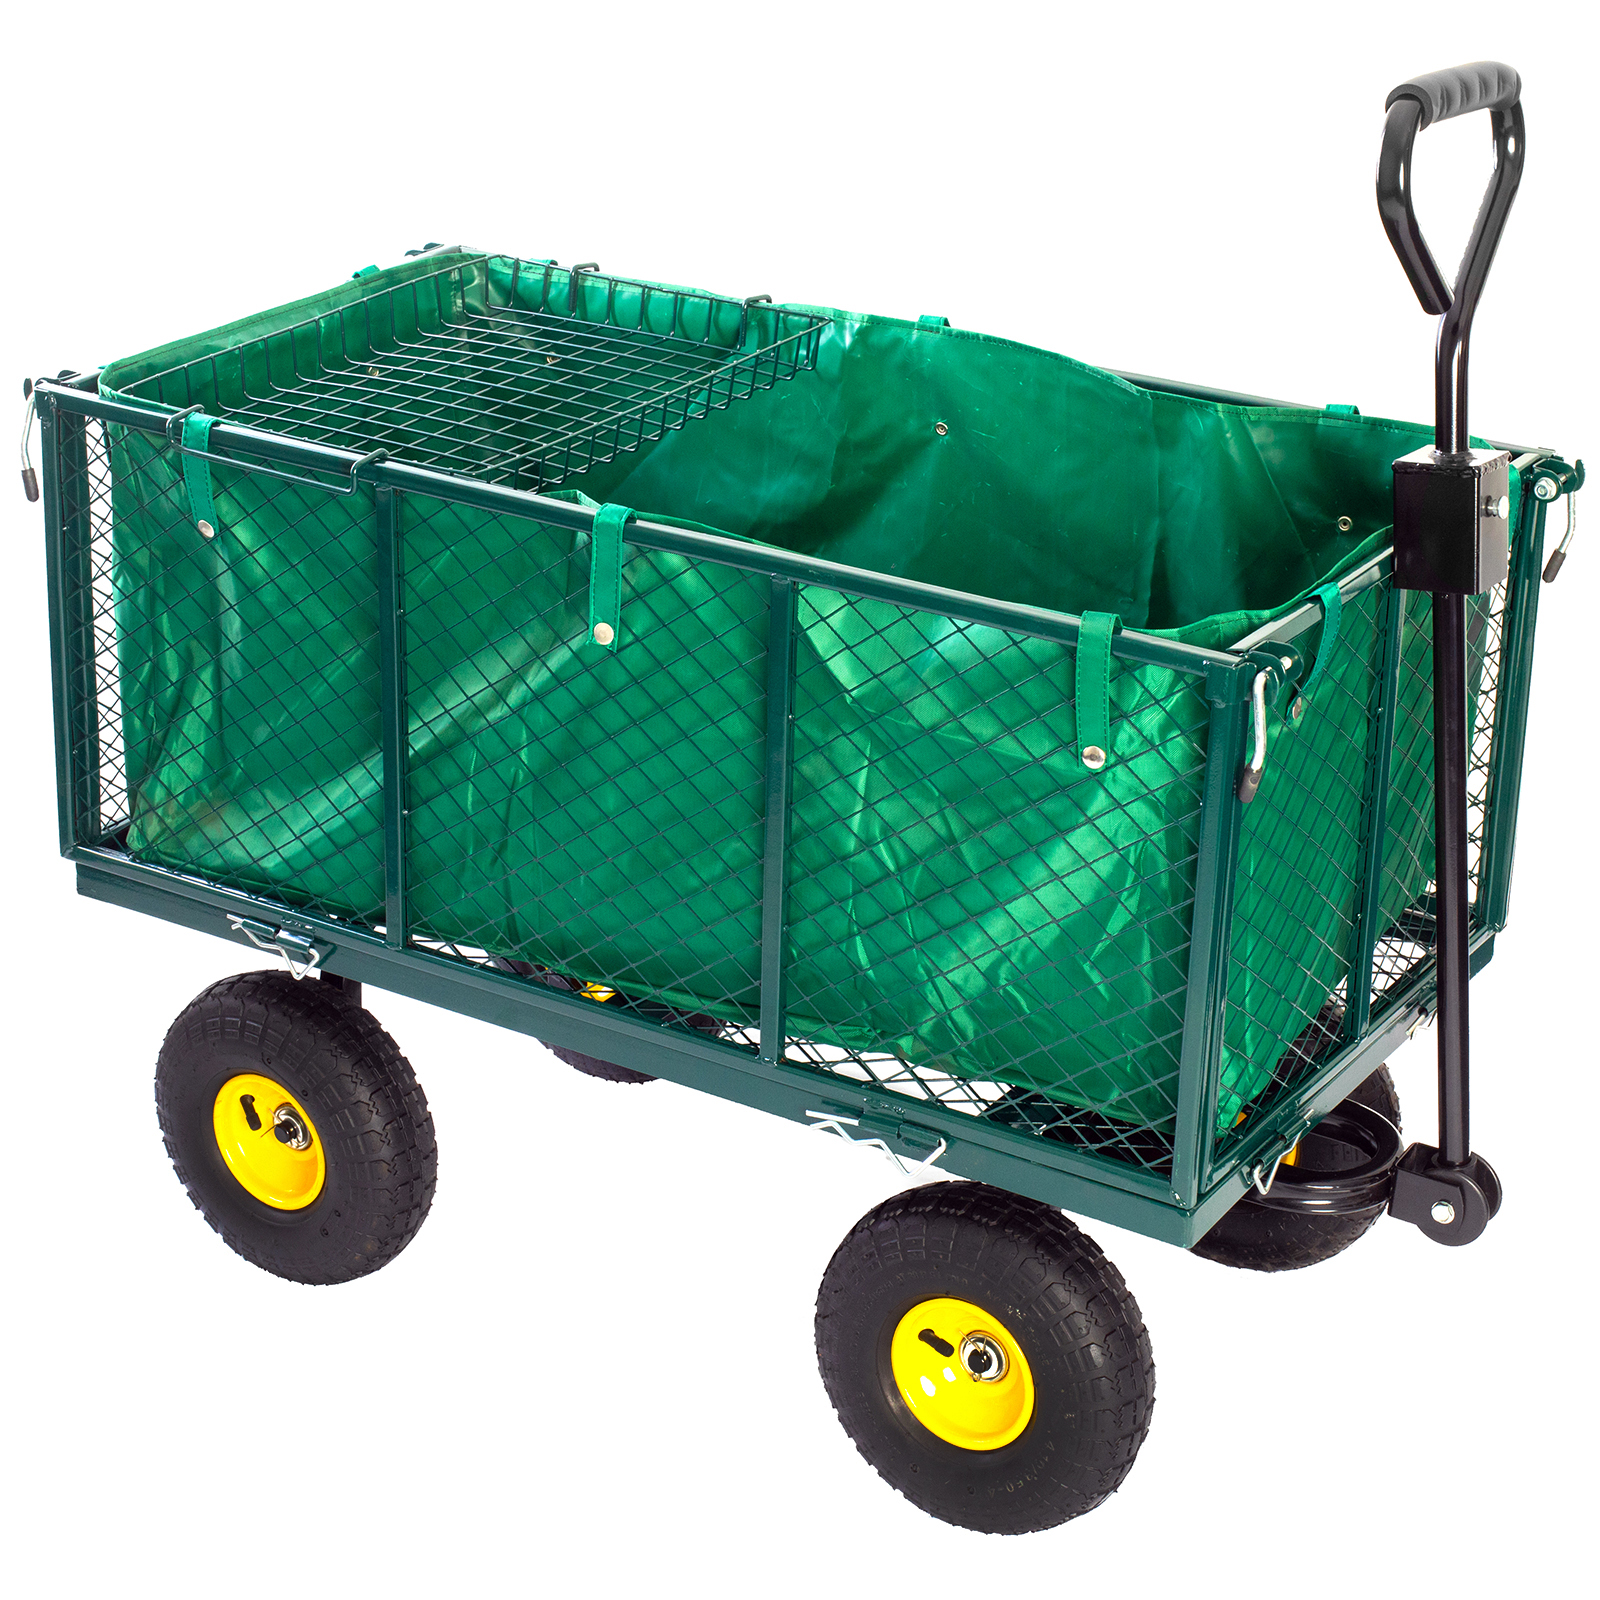 Bollerwagen Handwagen grün bis 550kg Transportkarre Gartenwagen Gartenkarre 